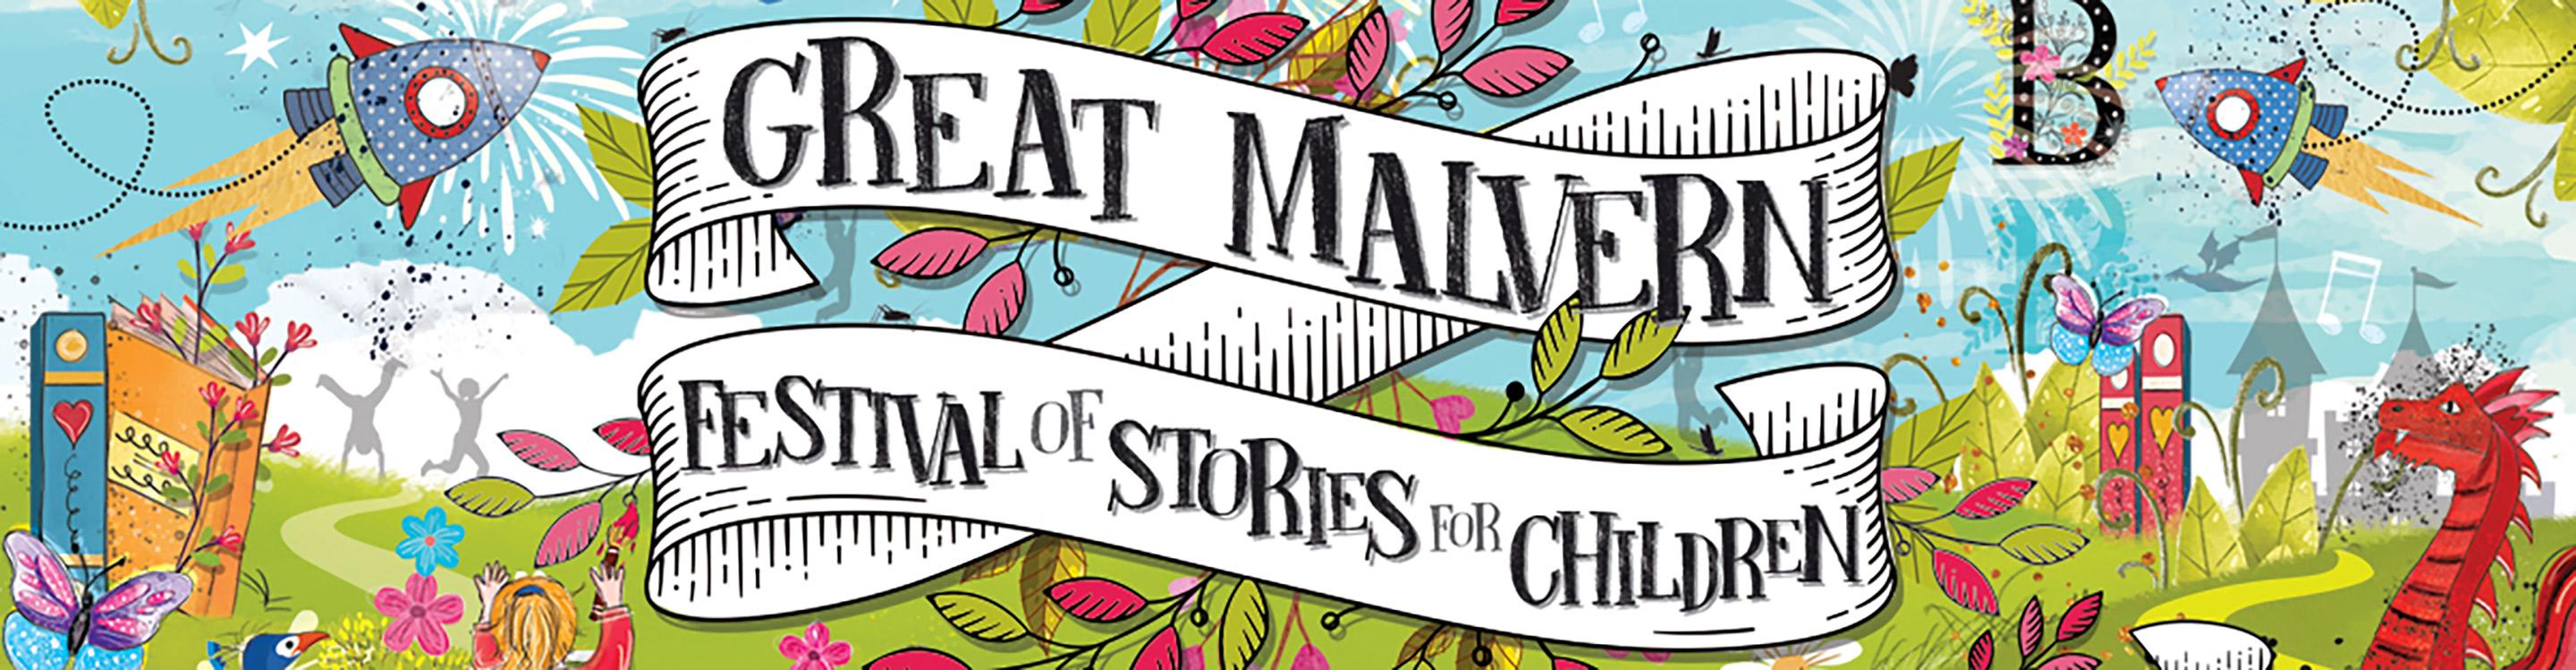 Great Malvern Festival of Stories for Children